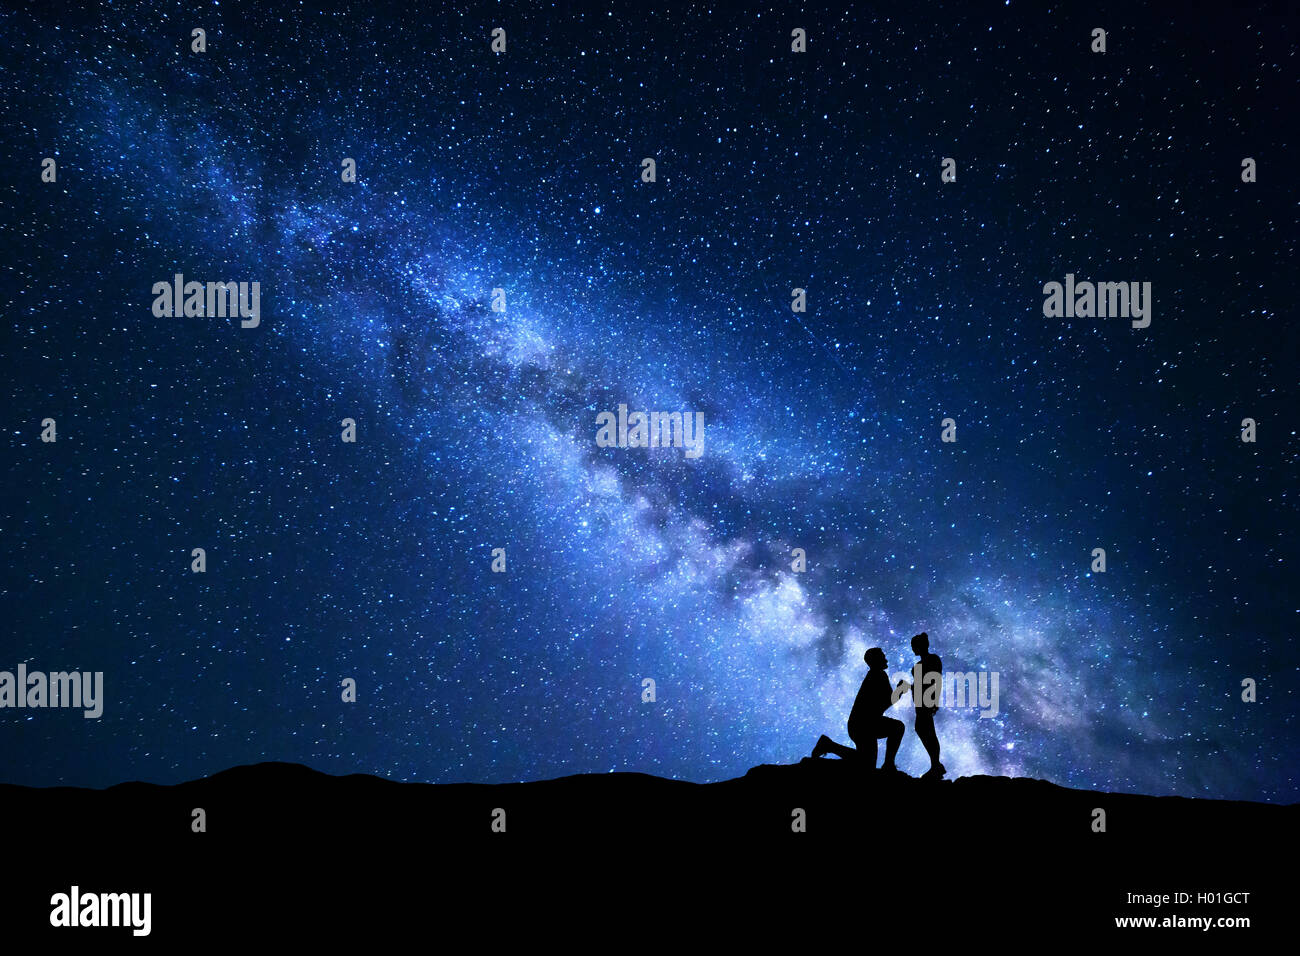 Milky Way. Nacht-Landschaft mit Silhouetten von einem Mann macht Heiratsantrag an seine Freundin und Sternenhimmel. Silhouette von lo Stockfoto